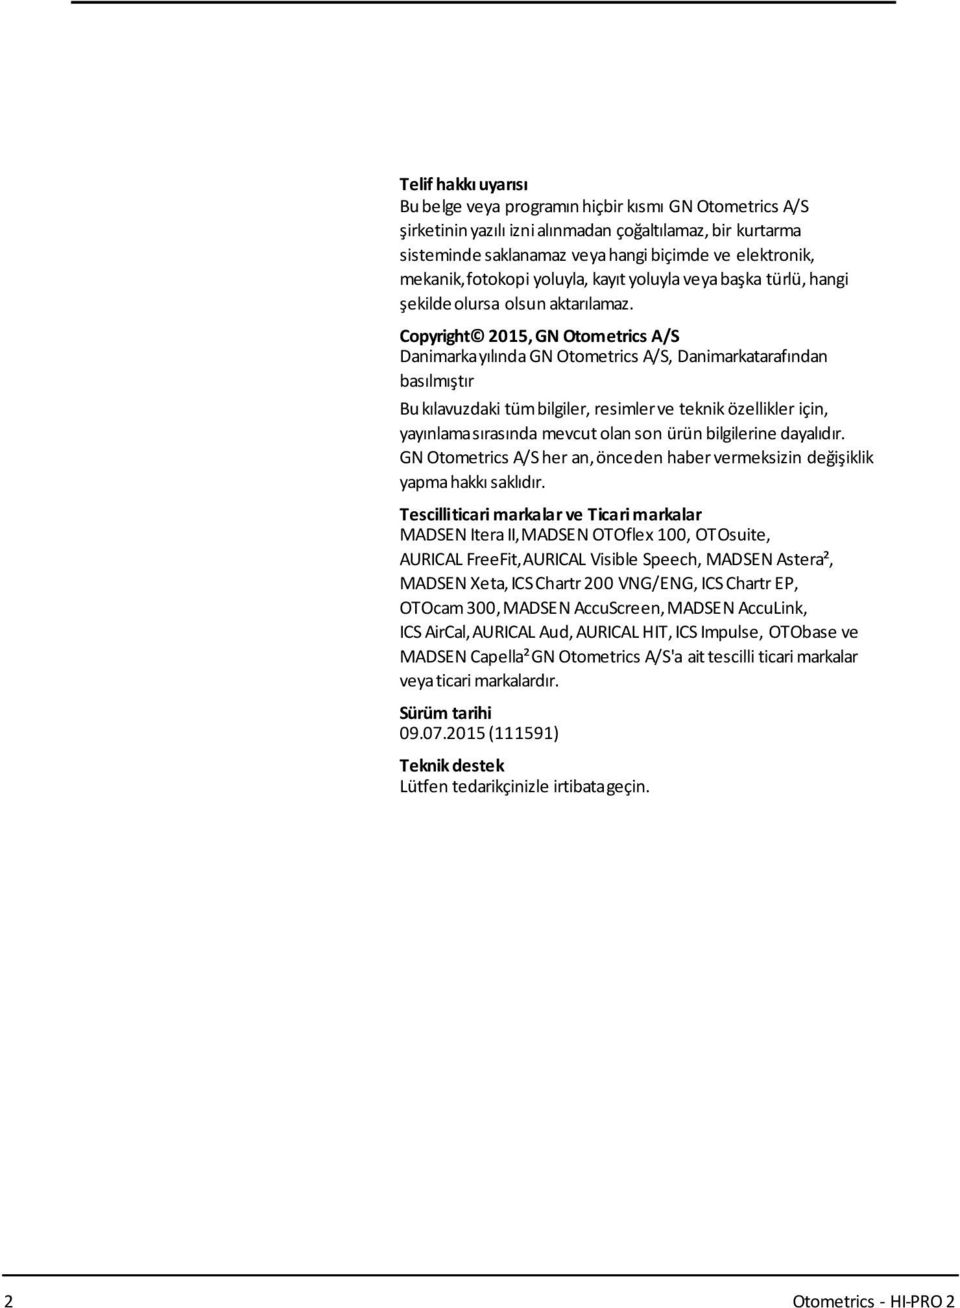 Copyright 2015, GN Otometrics A/S Danimarkayılında GN Otometrics A/S, Danimarkatarafından basılmıştır Bukılavuzdaki tümbilgiler, resimlerve teknik özellikler için, yayınlamasırasında mevcut olan son